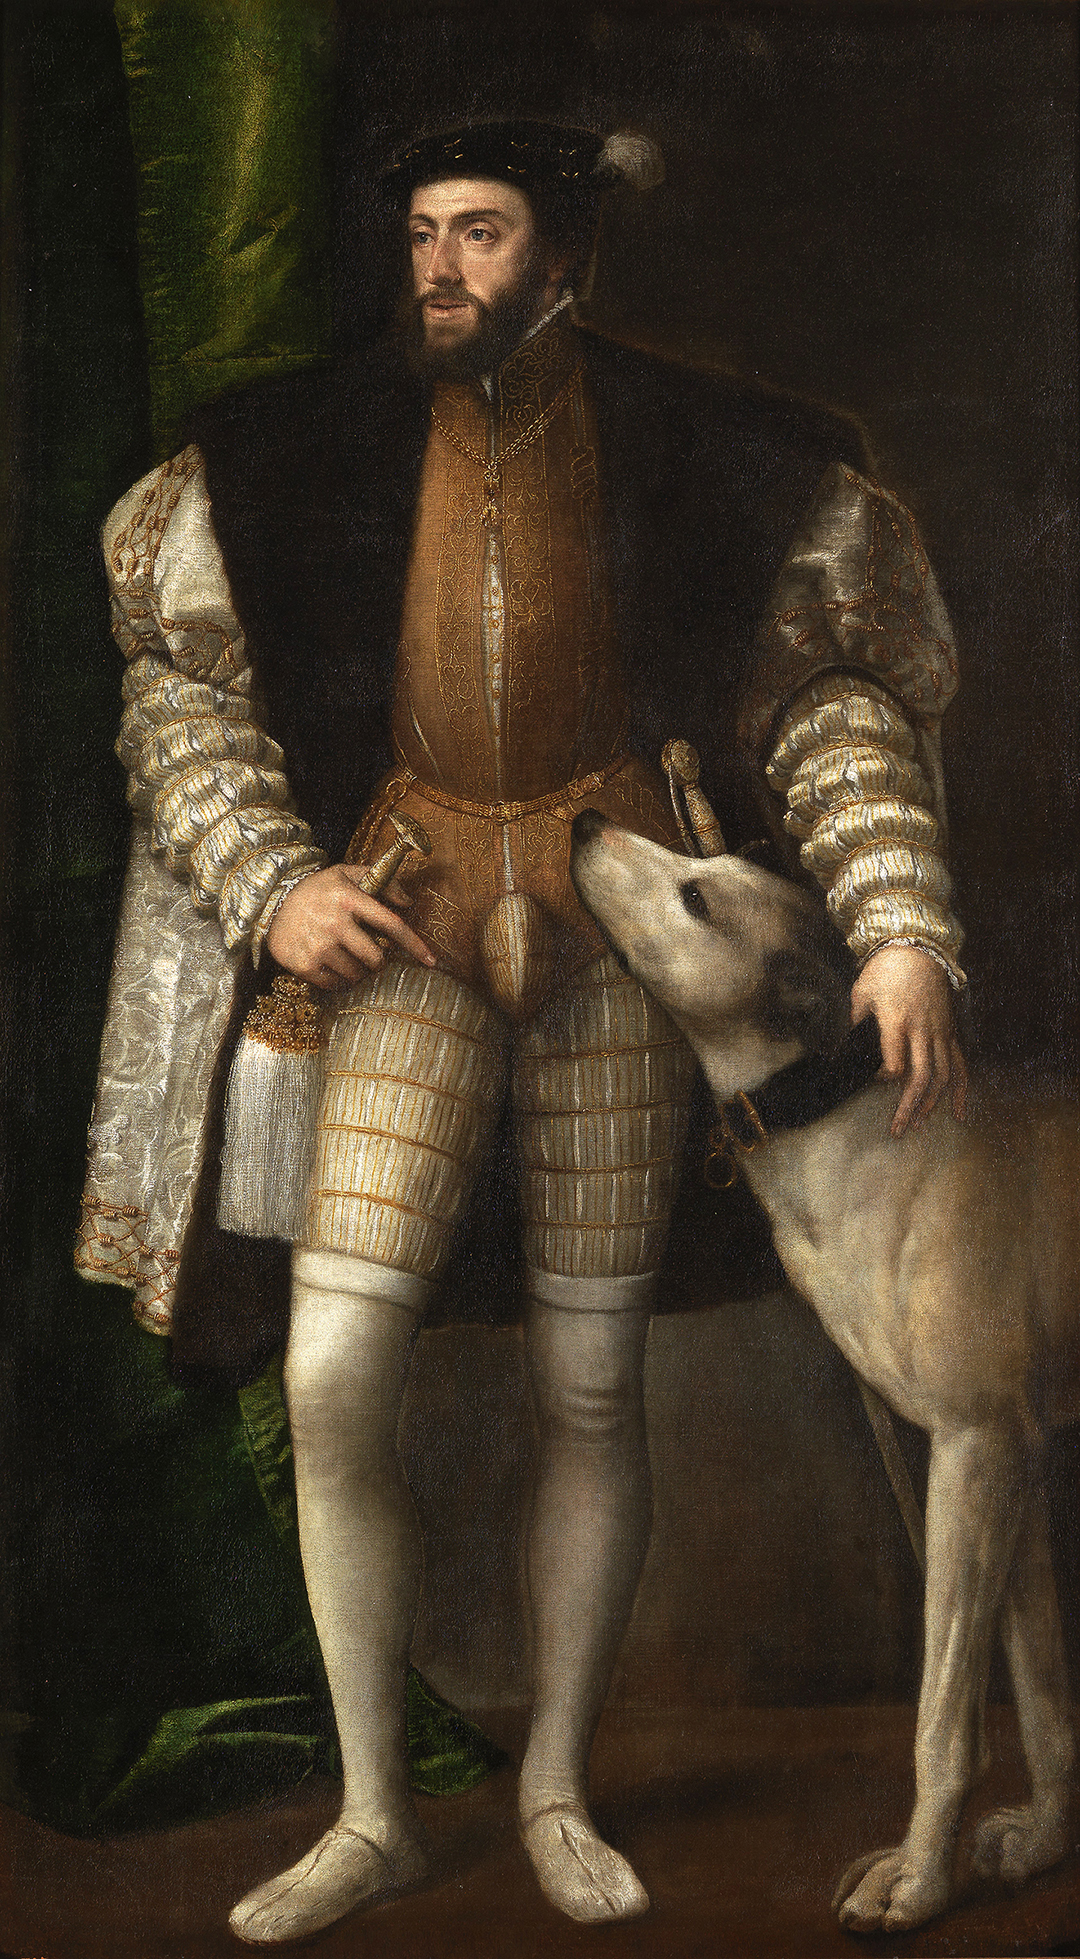 Bức tranh “Portrait of Charles V With a Dog” (Chân Dung Vua Charles V và Chú Chó Săn) của danh họa Titian, năm 1533. Sơn dầu trên vải canvas. Bảo tàng Prado, Madrid. (Ảnh: Tư liệu công cộng)